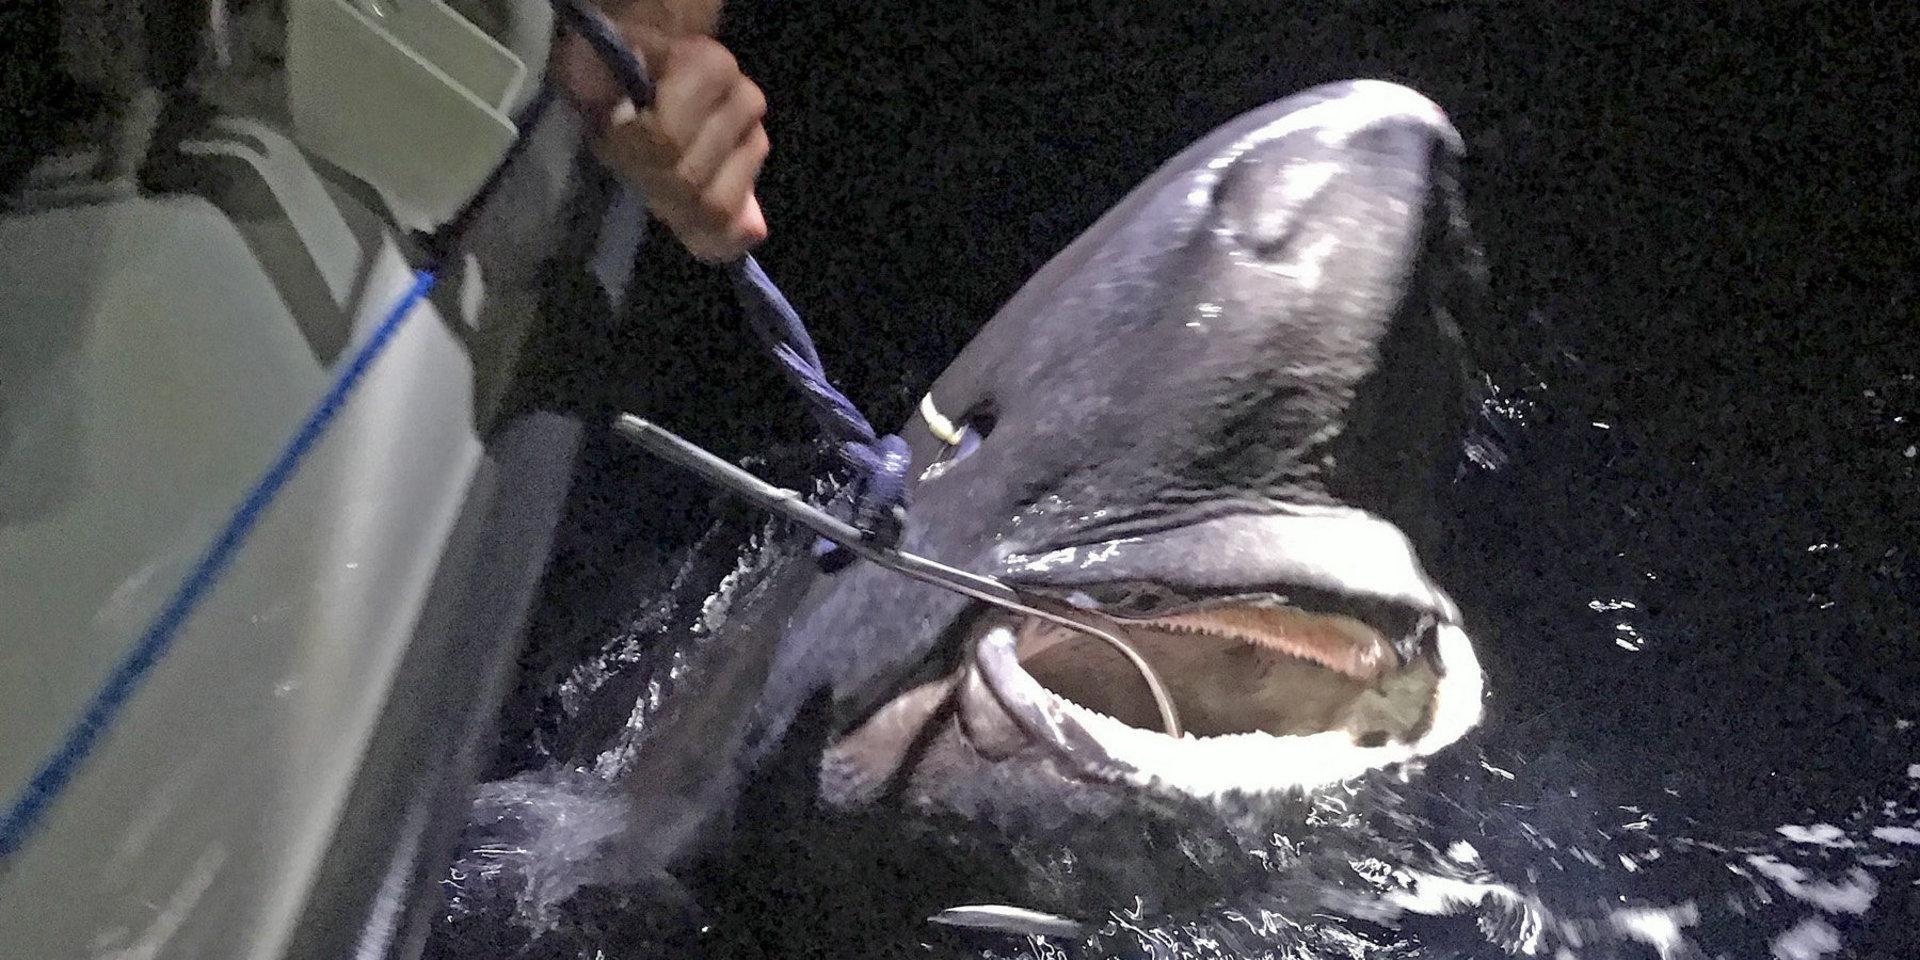 I mitten av juli fångades en 335 centimeter lång håkäring i Skagerrak. Fisken är nu utsedd till nytt svenskt sportfiskerekord.